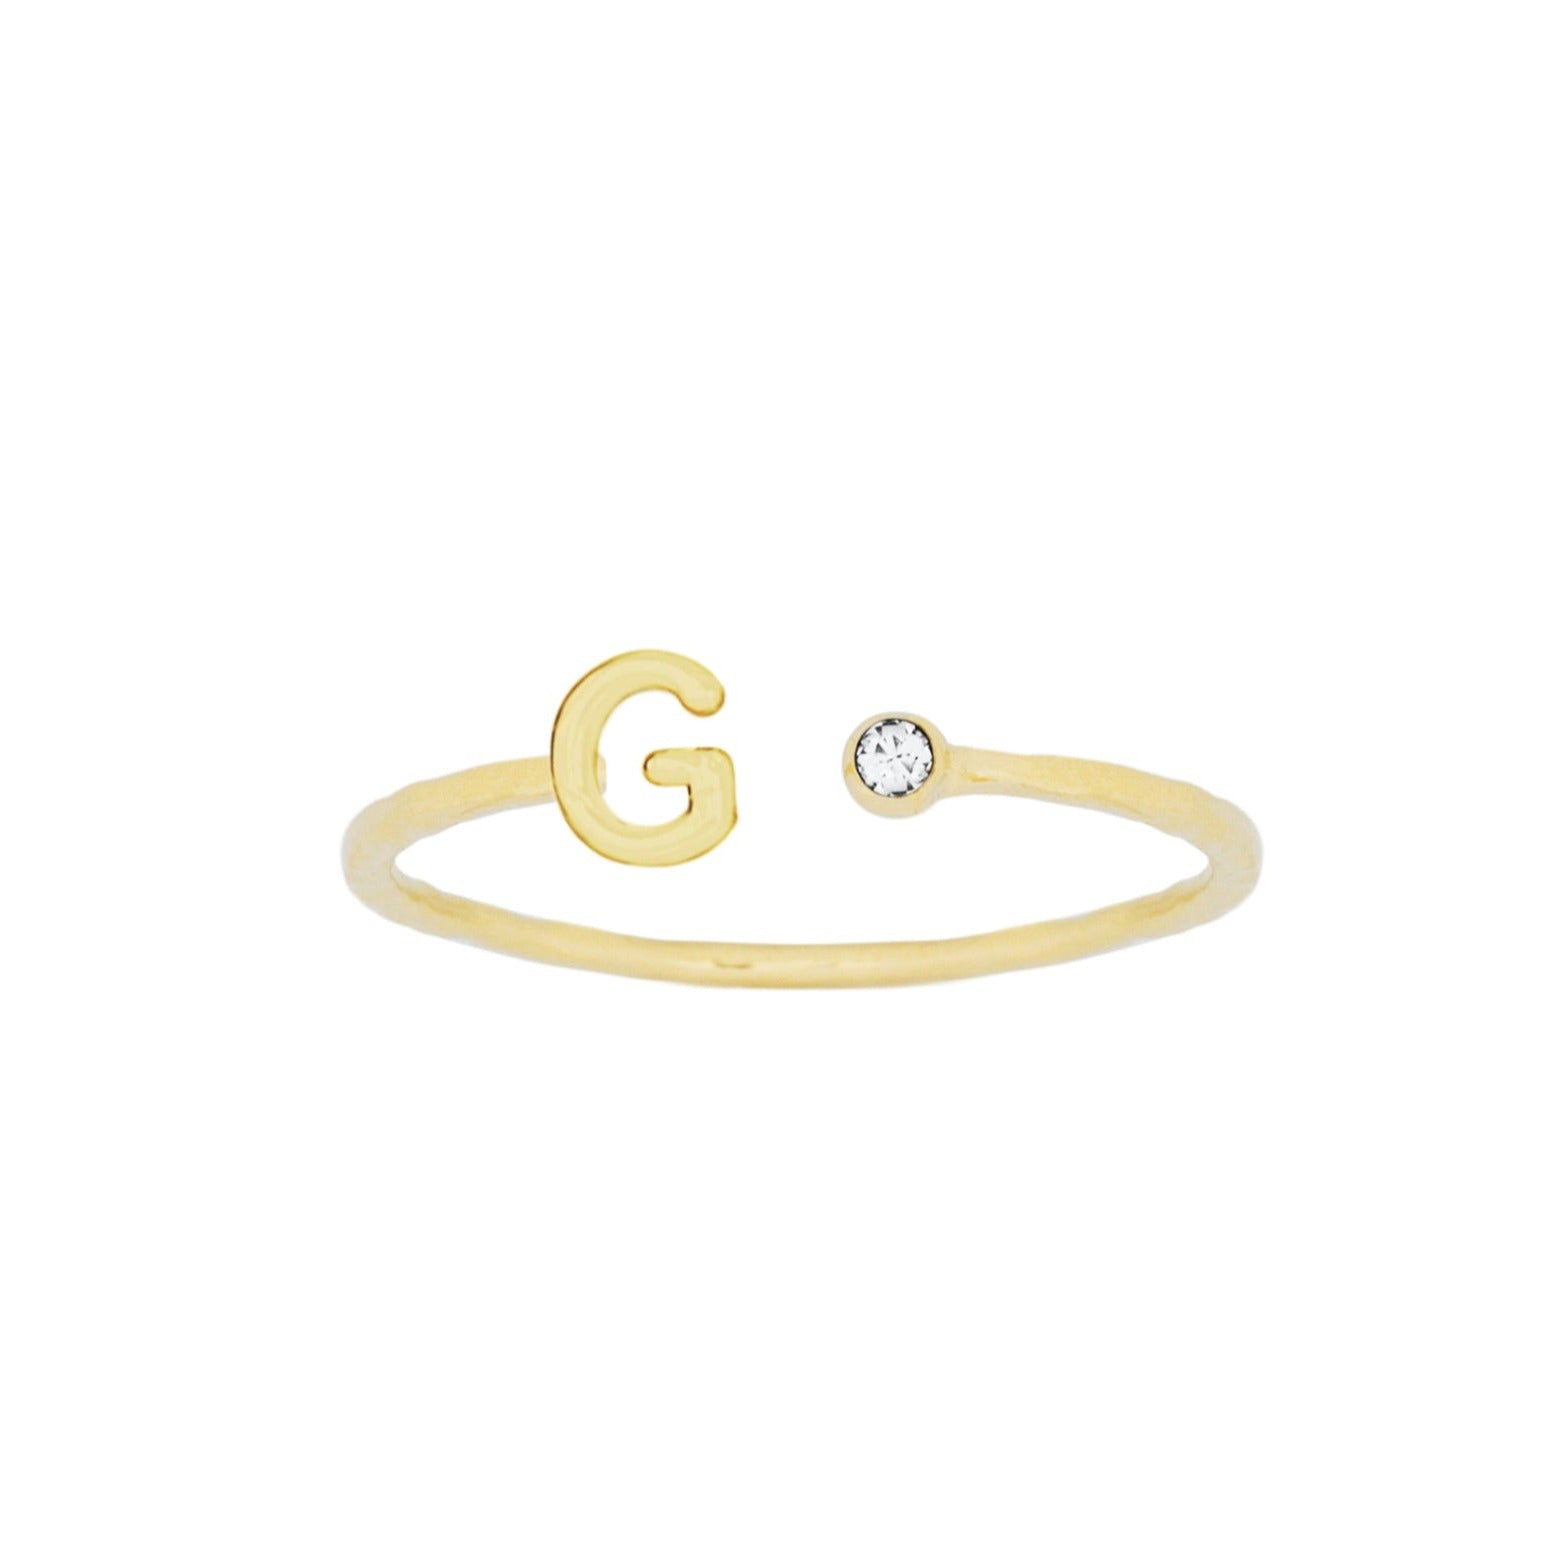 पार्टनर को करना है खुश दें ये Gold Ring Designs देखते ही कह उठेंगे - तुम्ही  हो सबसे बेस्ट' - पार्टनर को करना है खुश? दें ये Gold Ring Designs, देखते ही